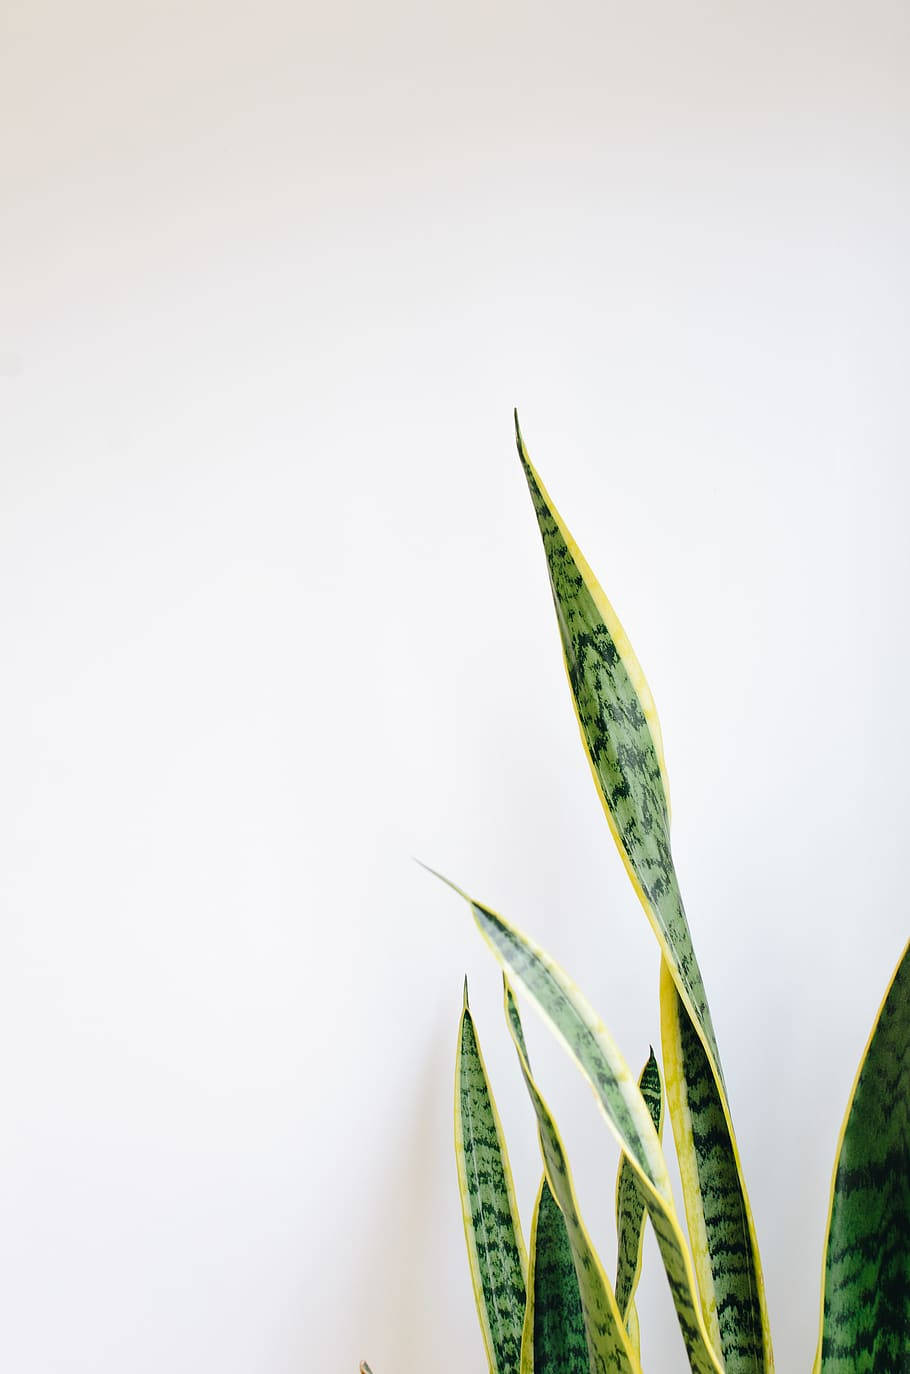 Einiphone Präsentiert Eine Kühne Grüne Pflanze. Wallpaper